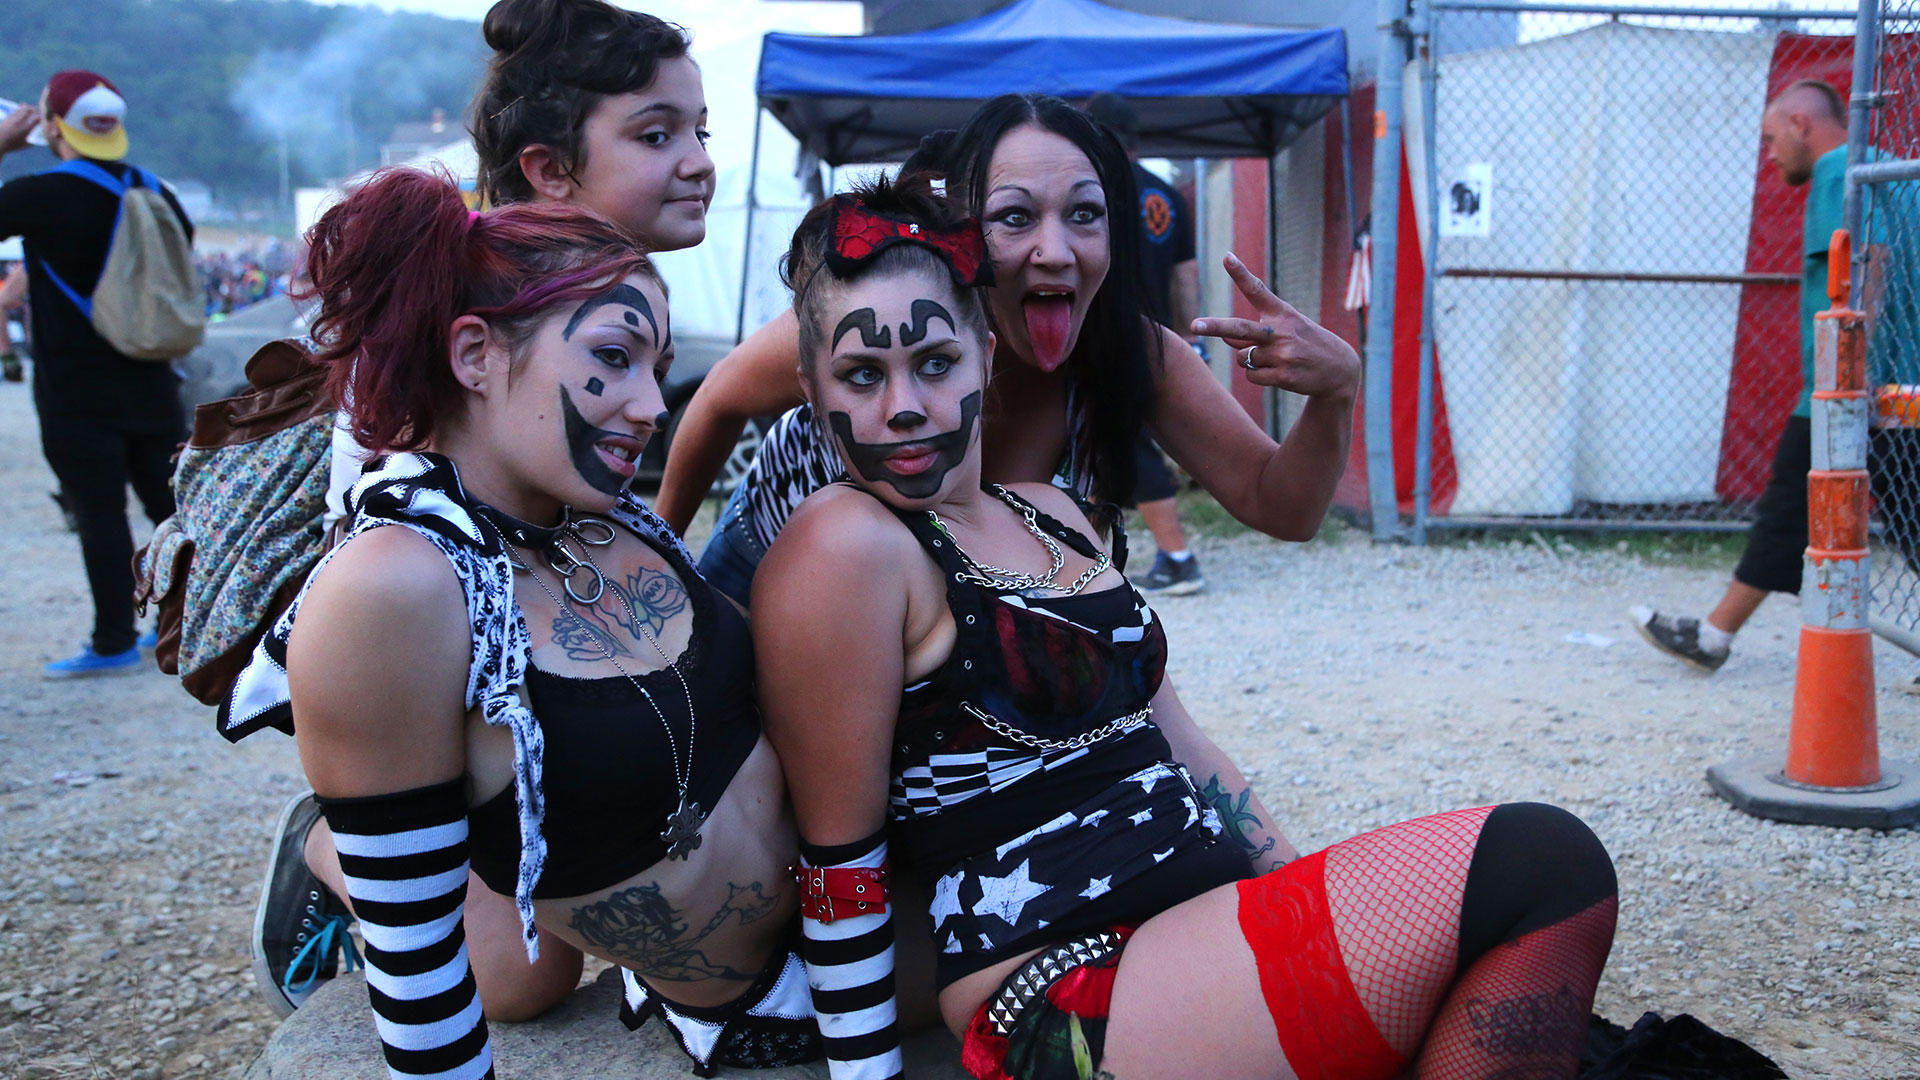 insane clown posse concert girls